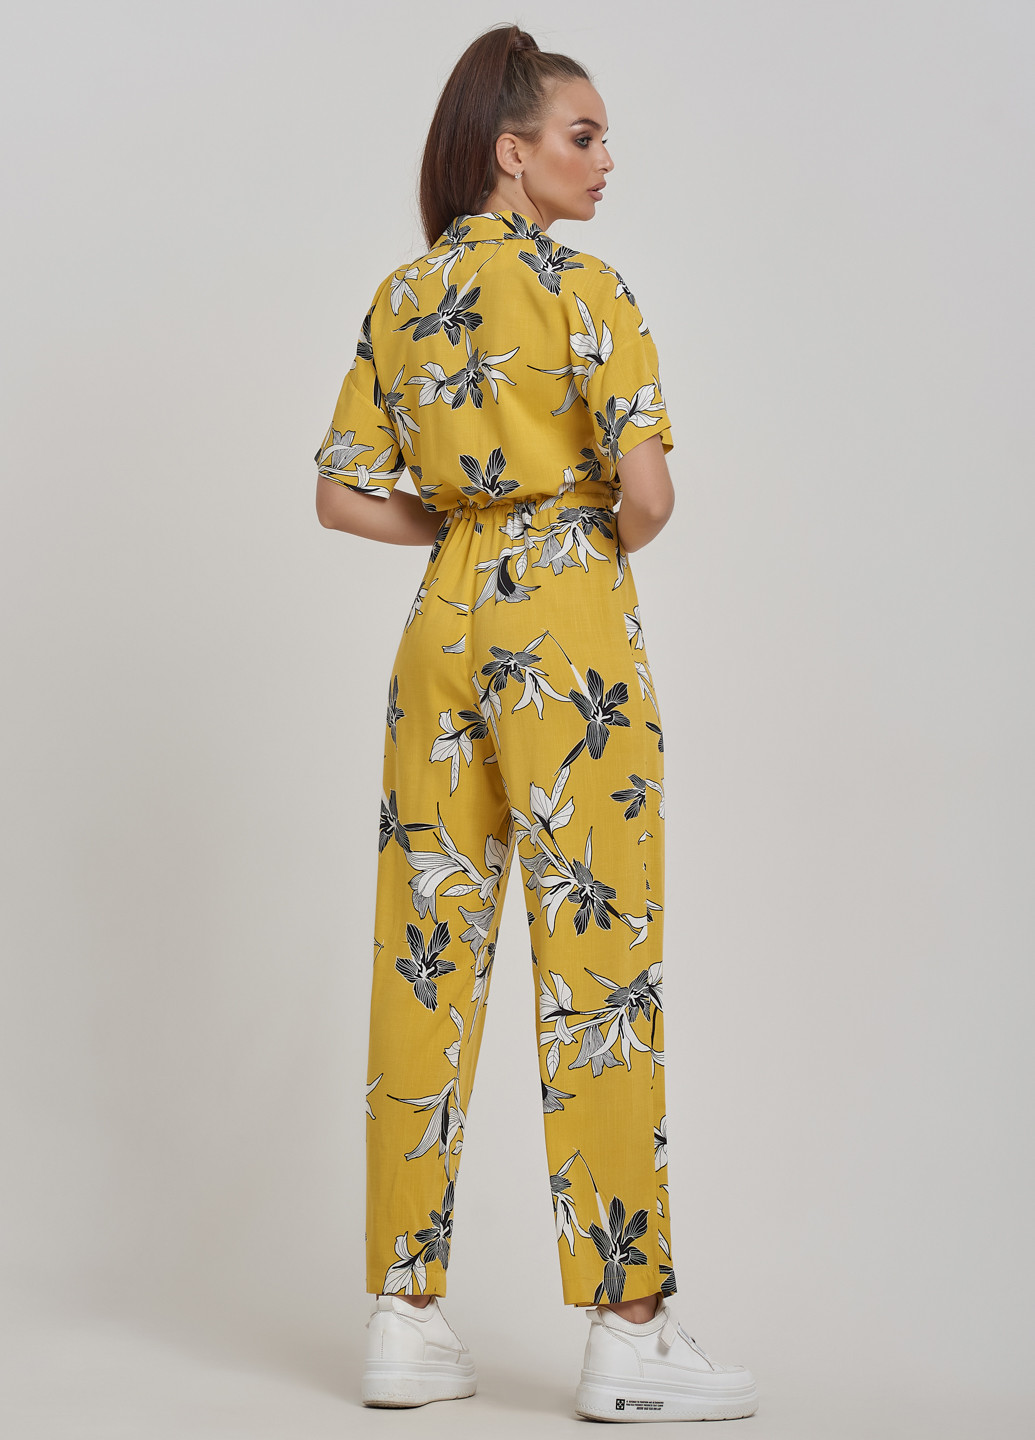 Комбинезон ST-Seventeen комбинезон-брюки цветочный жёлтый кэжуал лен